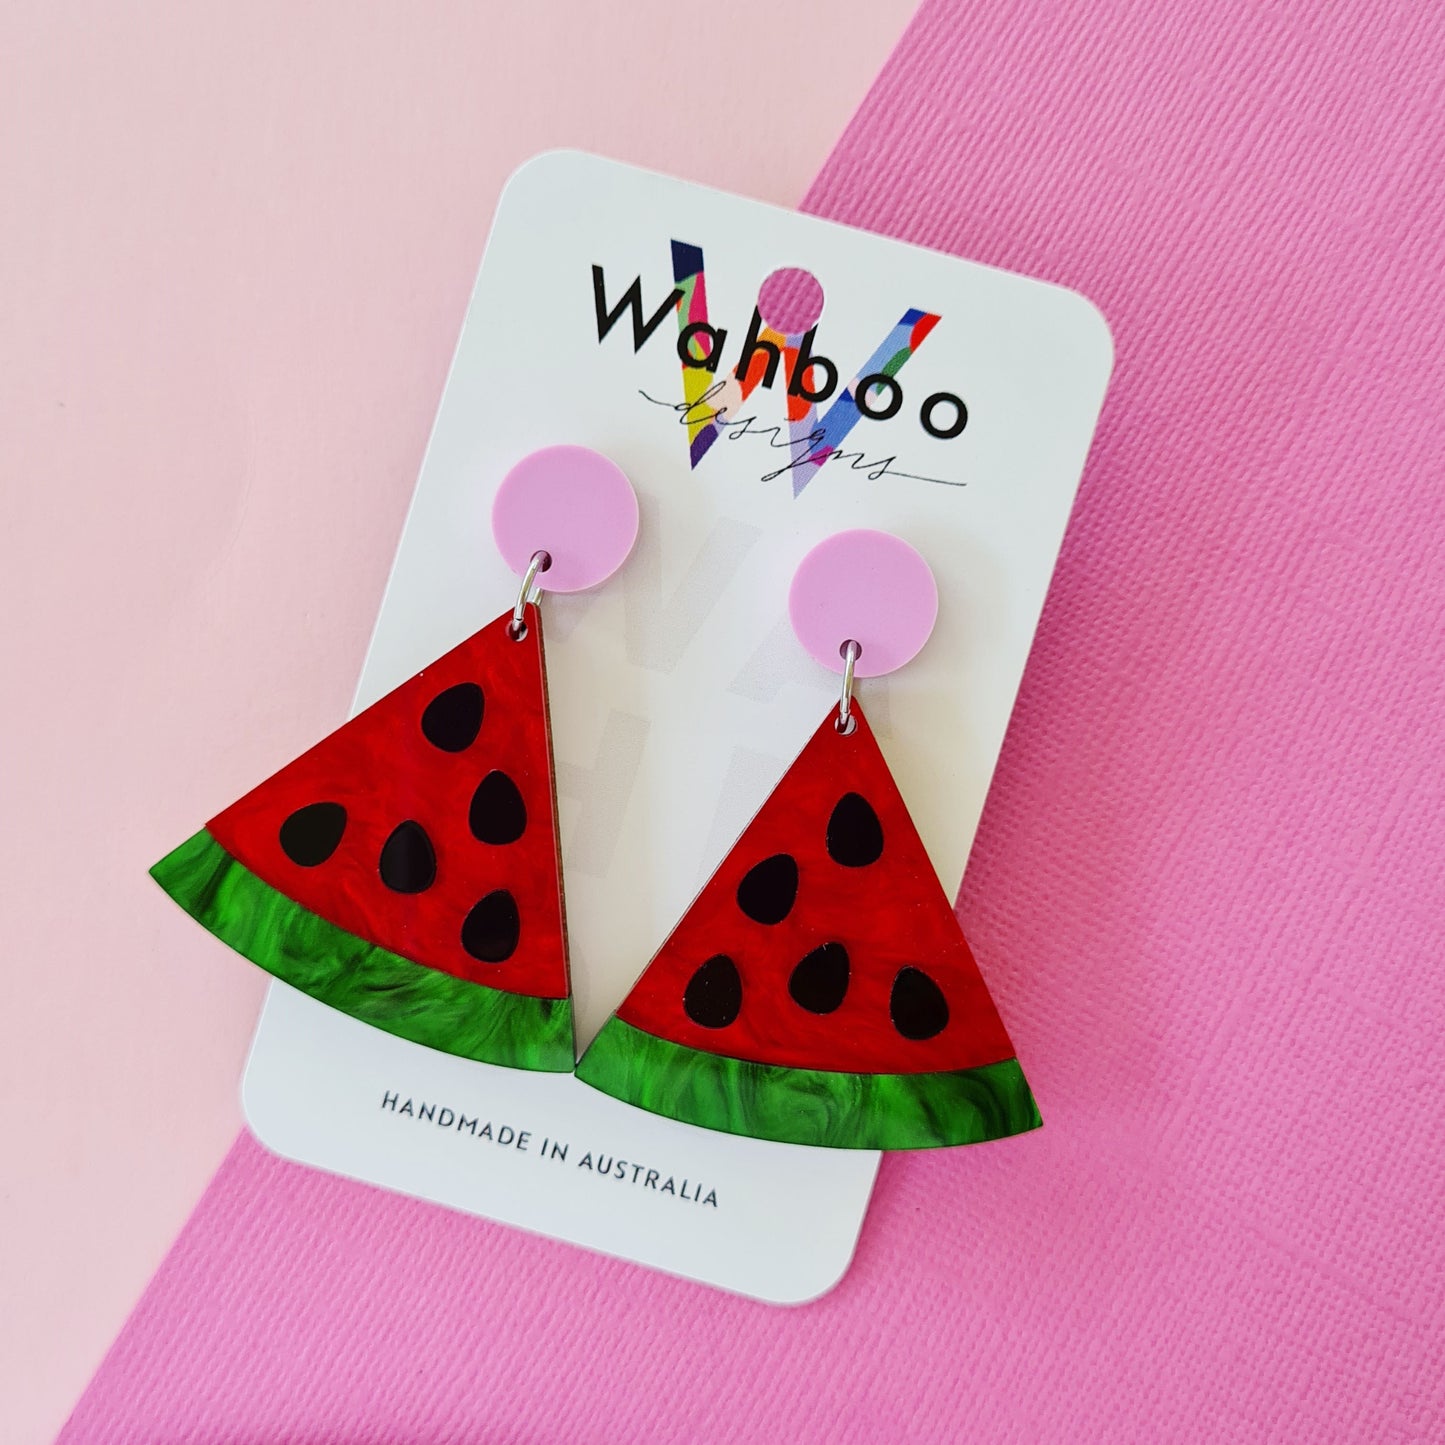 Watermelon Dangle Earrings